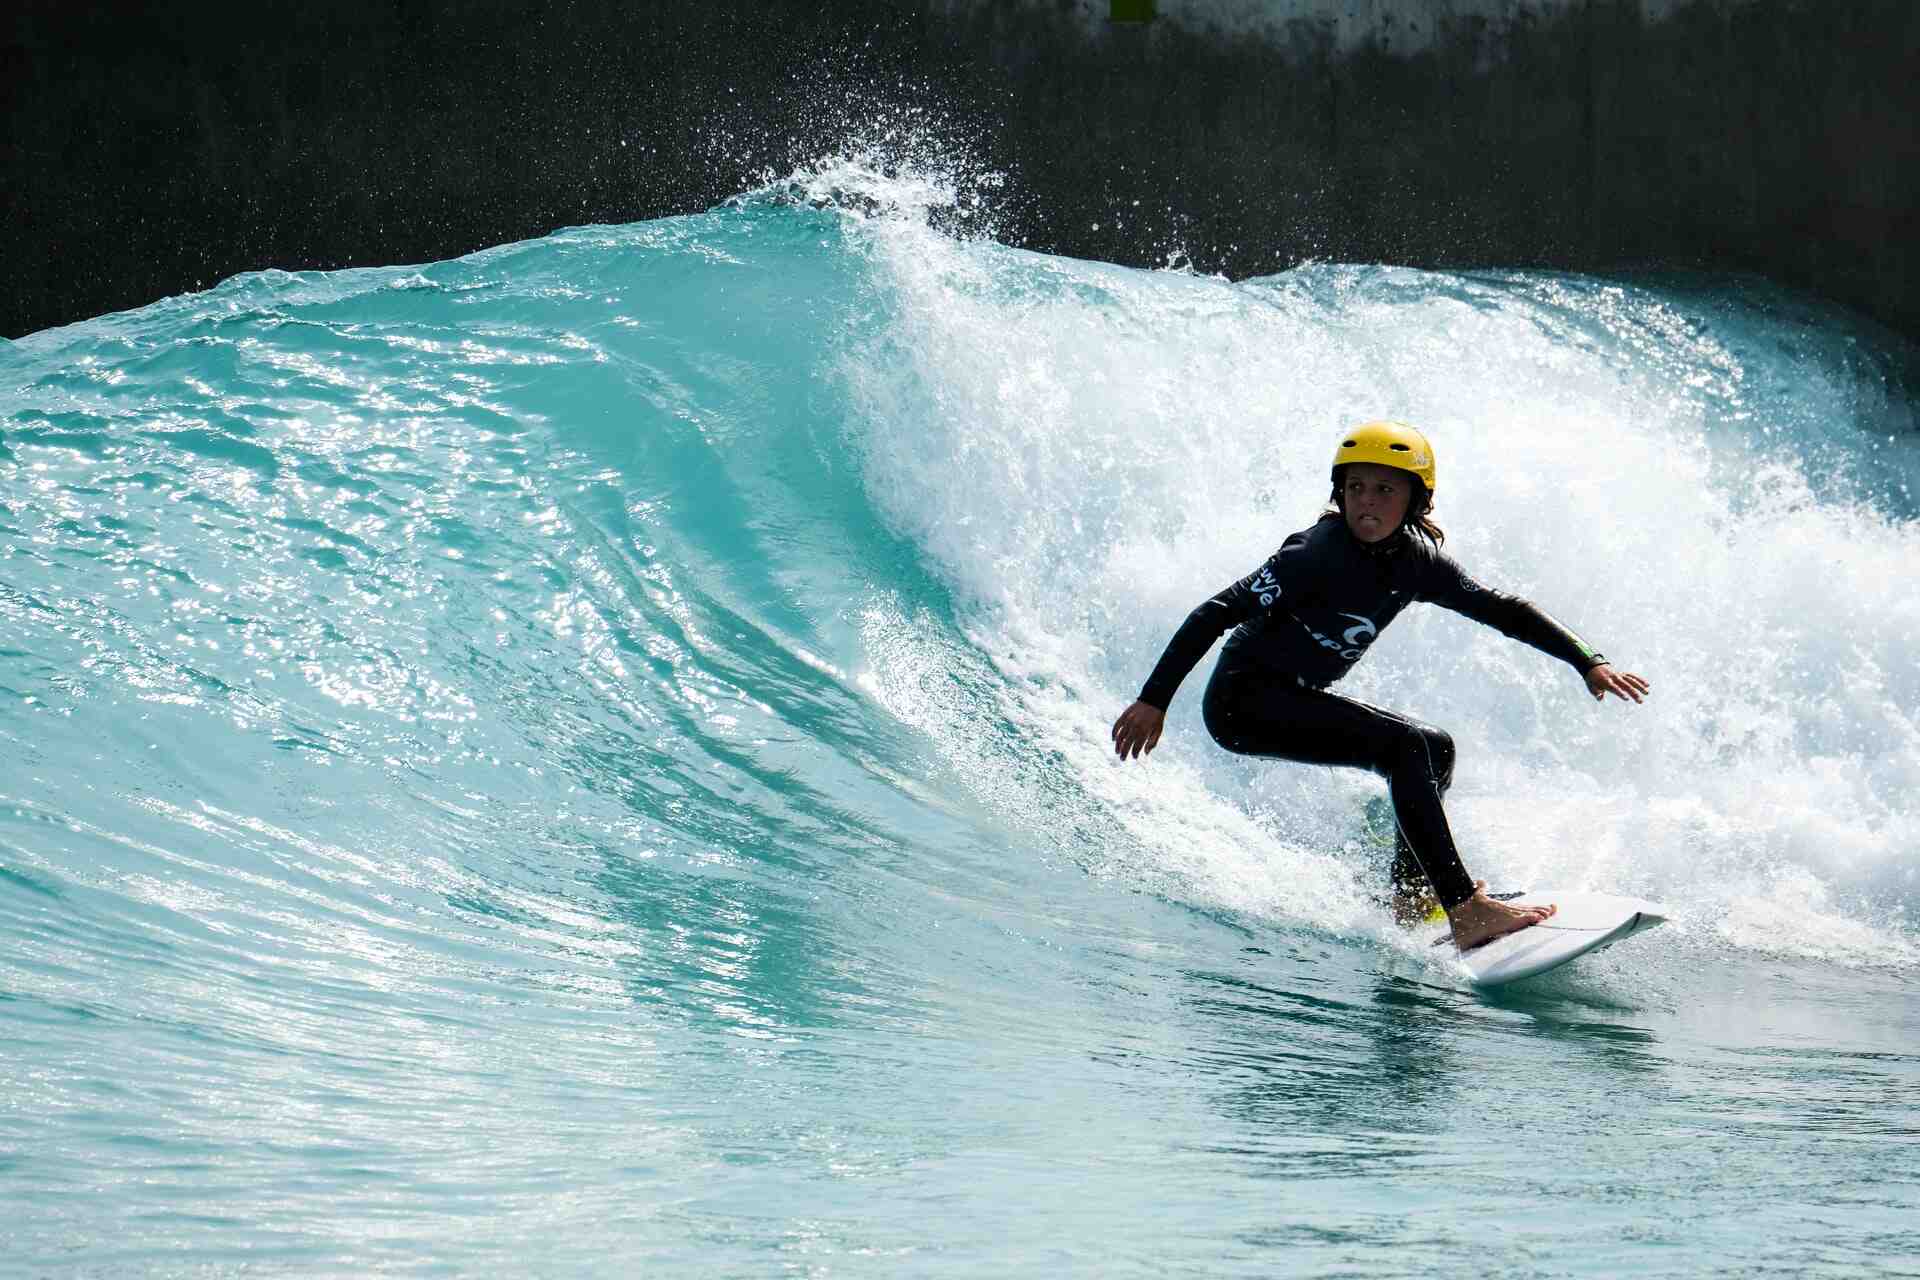 Do surfers wear helmets at Pipeline?